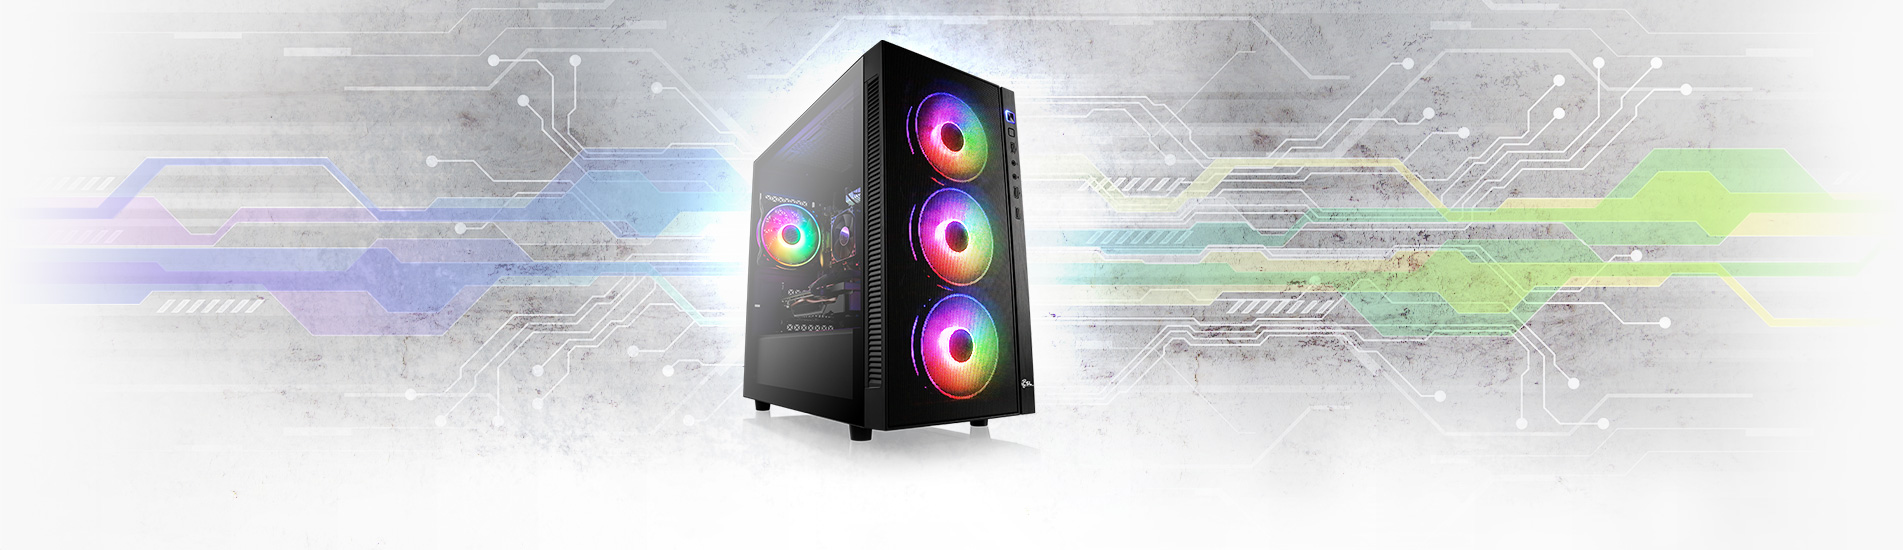 Ein sehr starker AMD Ryzen™ 5 Gaming-PC mit Radeon™ RX 6700 XT für hohe Auflösungen bis WQHD 1440p.